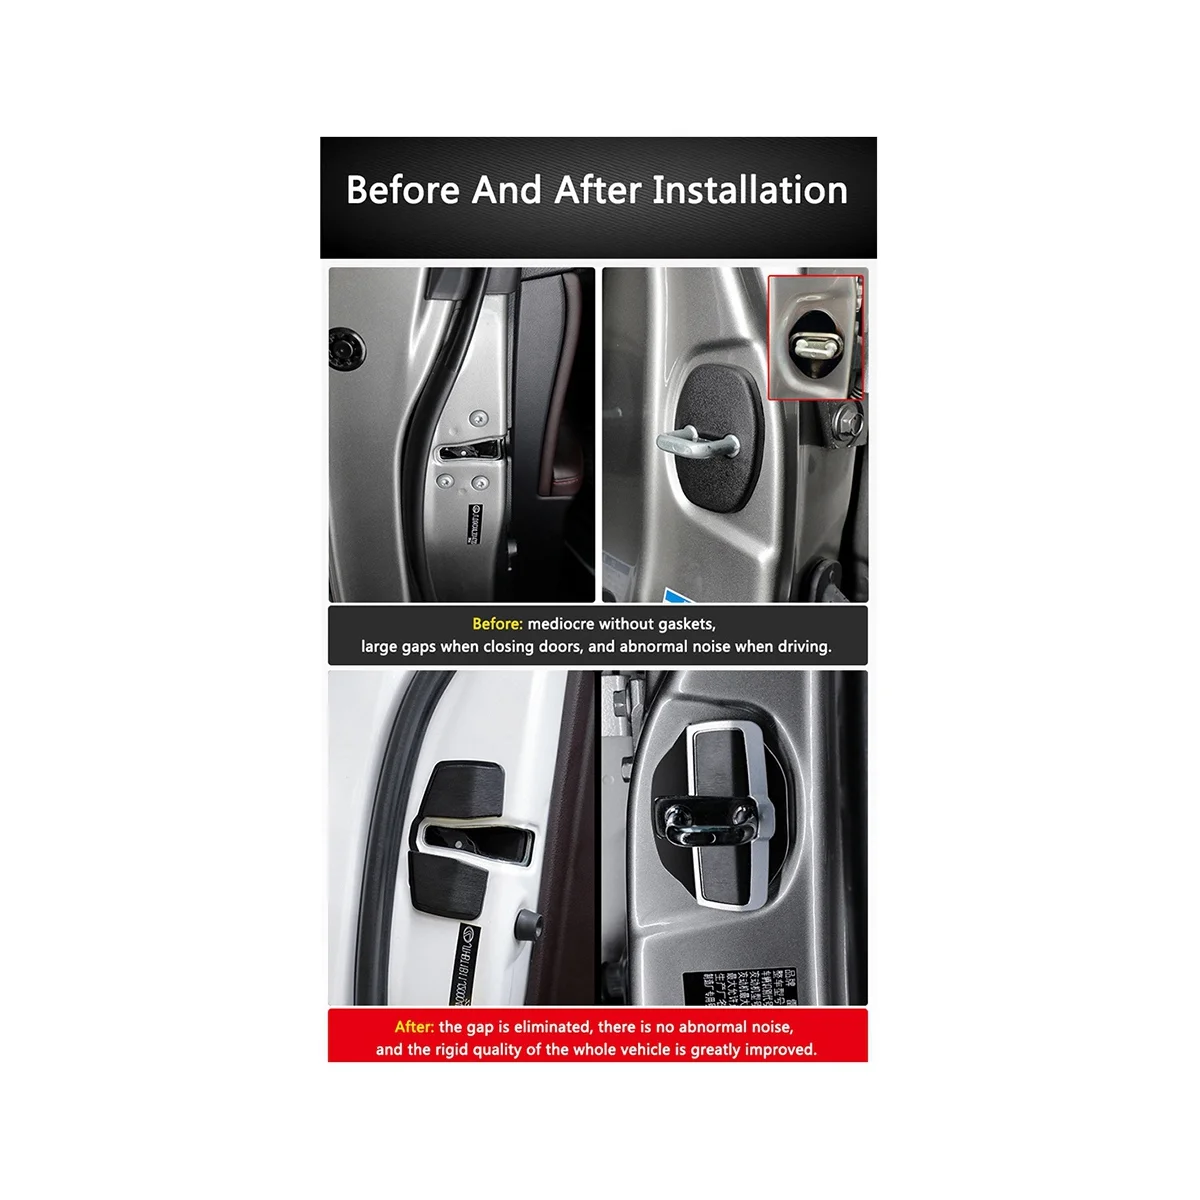 6 Комплектов Пряжки Дверного Замка TRD, Модернизированные Защелки Крышки Стабилизатора для Lexus Серии Toyota, Устраняющие Шум, Ограничитель Пространства 4